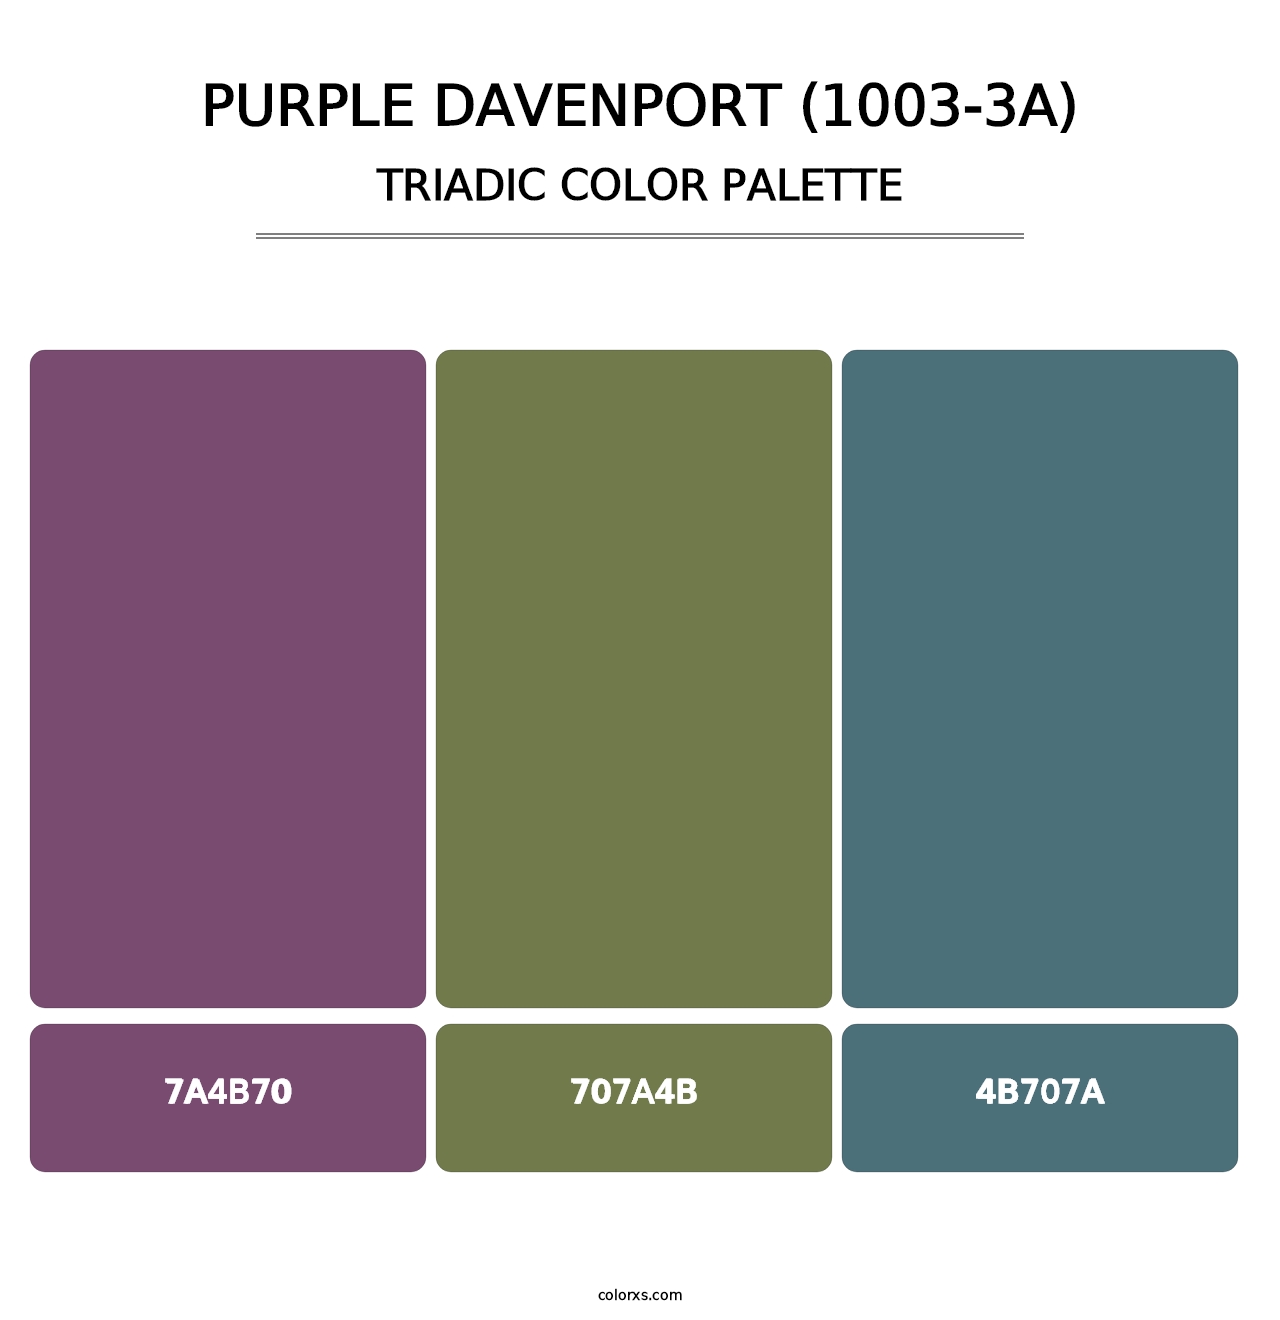 Purple Davenport (1003-3A) - Triadic Color Palette